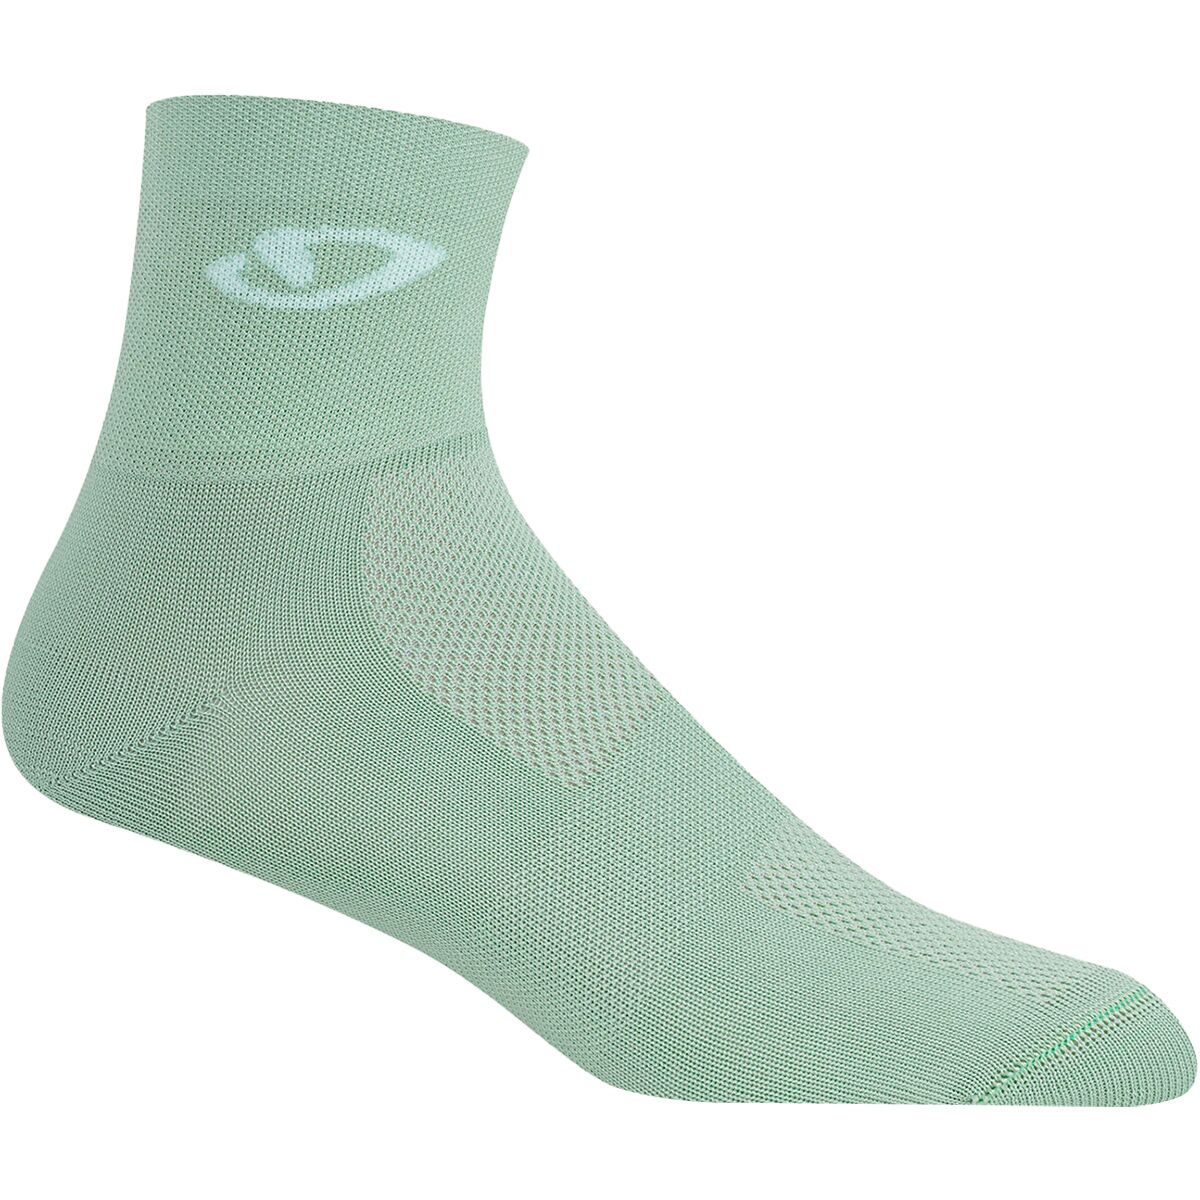 Giro Comp Racer Socks Mineral, XL - Men's